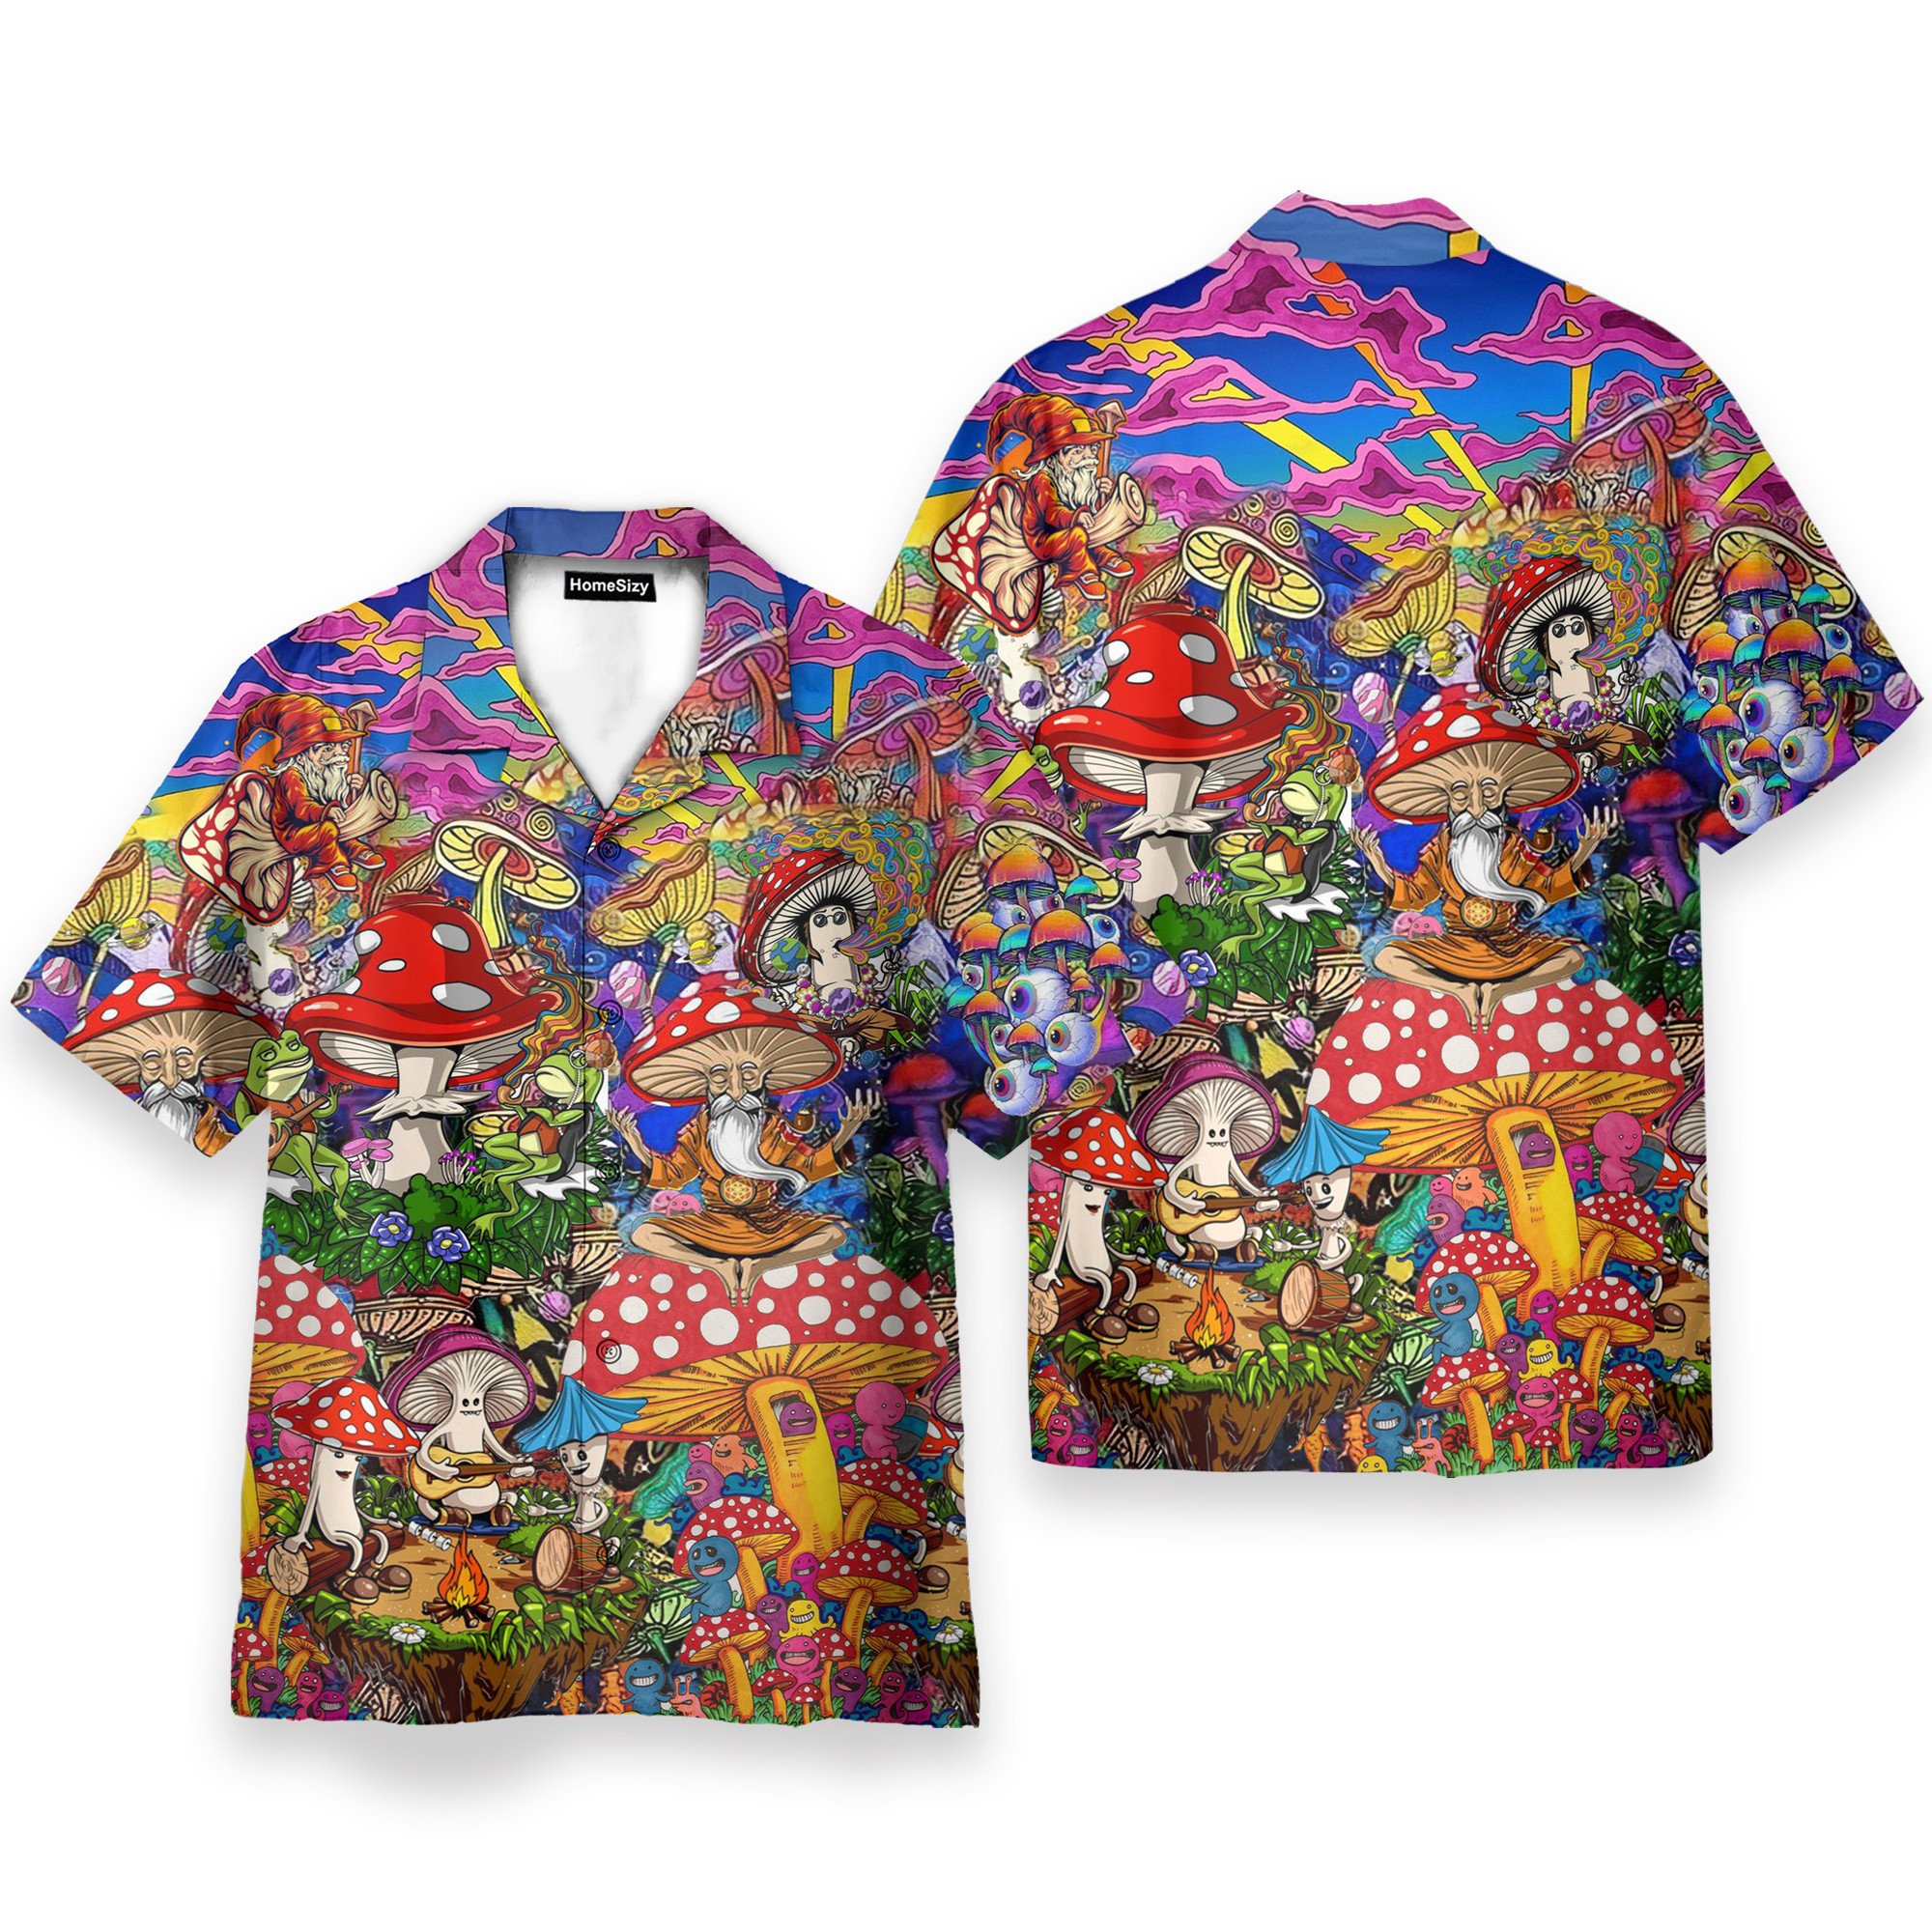 Homesizy Hippie Mushroom Hawaiian Shirt KLZ107709Lb - Homesizy